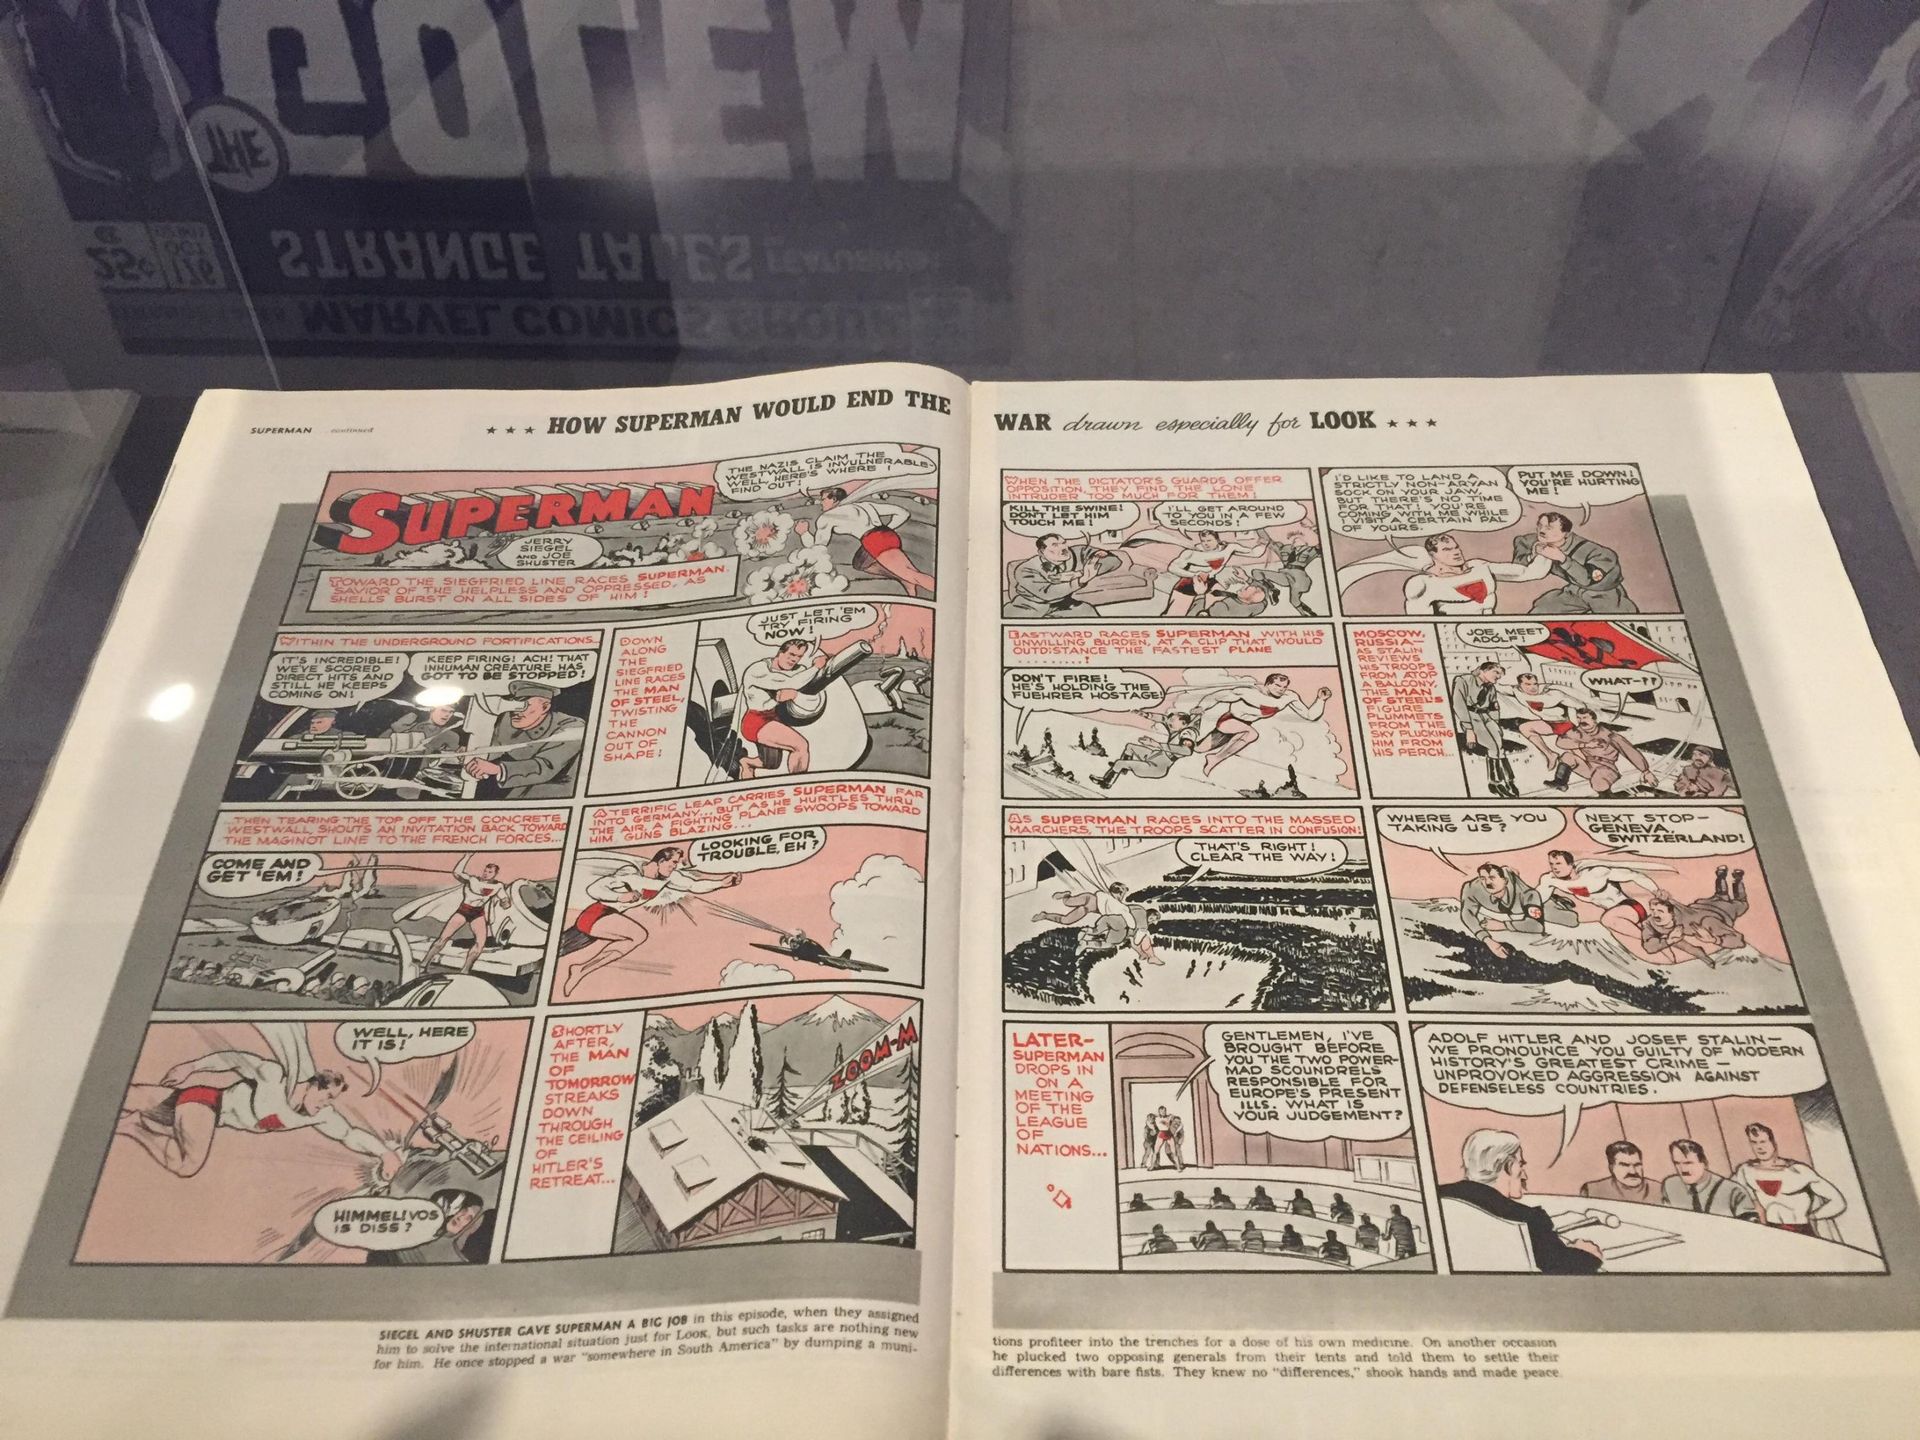 “Superheroes never dies – comics and jewish memories” jusqu’au 26 avril au Musée Juif de Belgique